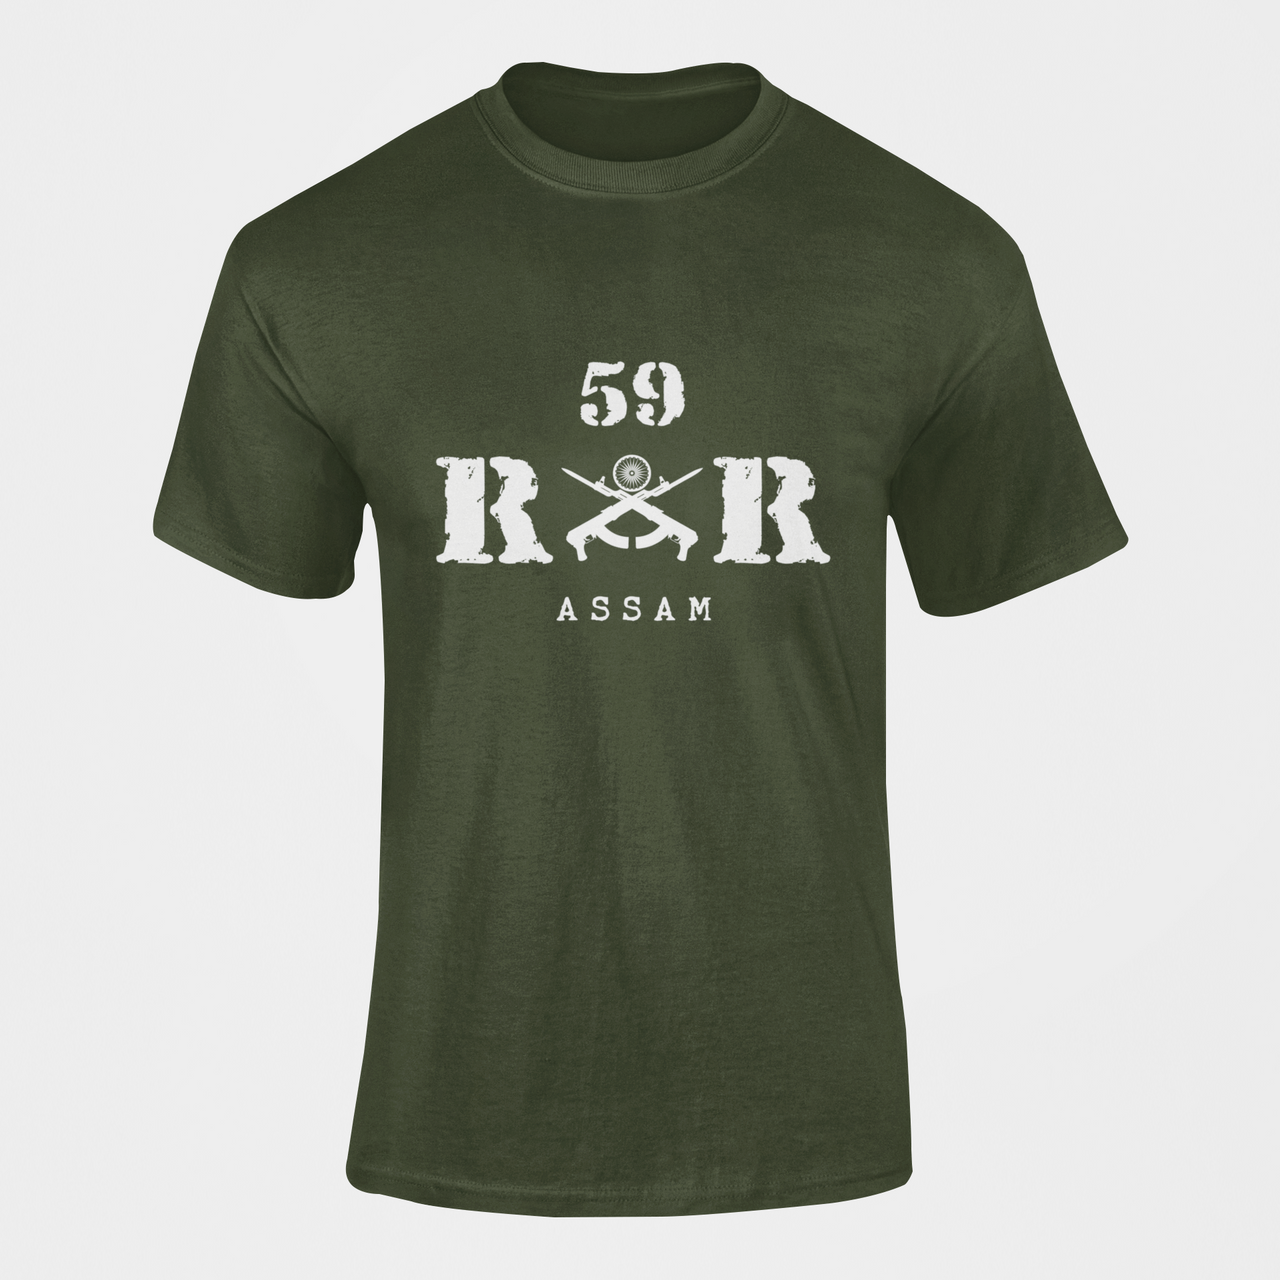 Rashtriya Rifles T-shirt - 59 RR Assam (Men)